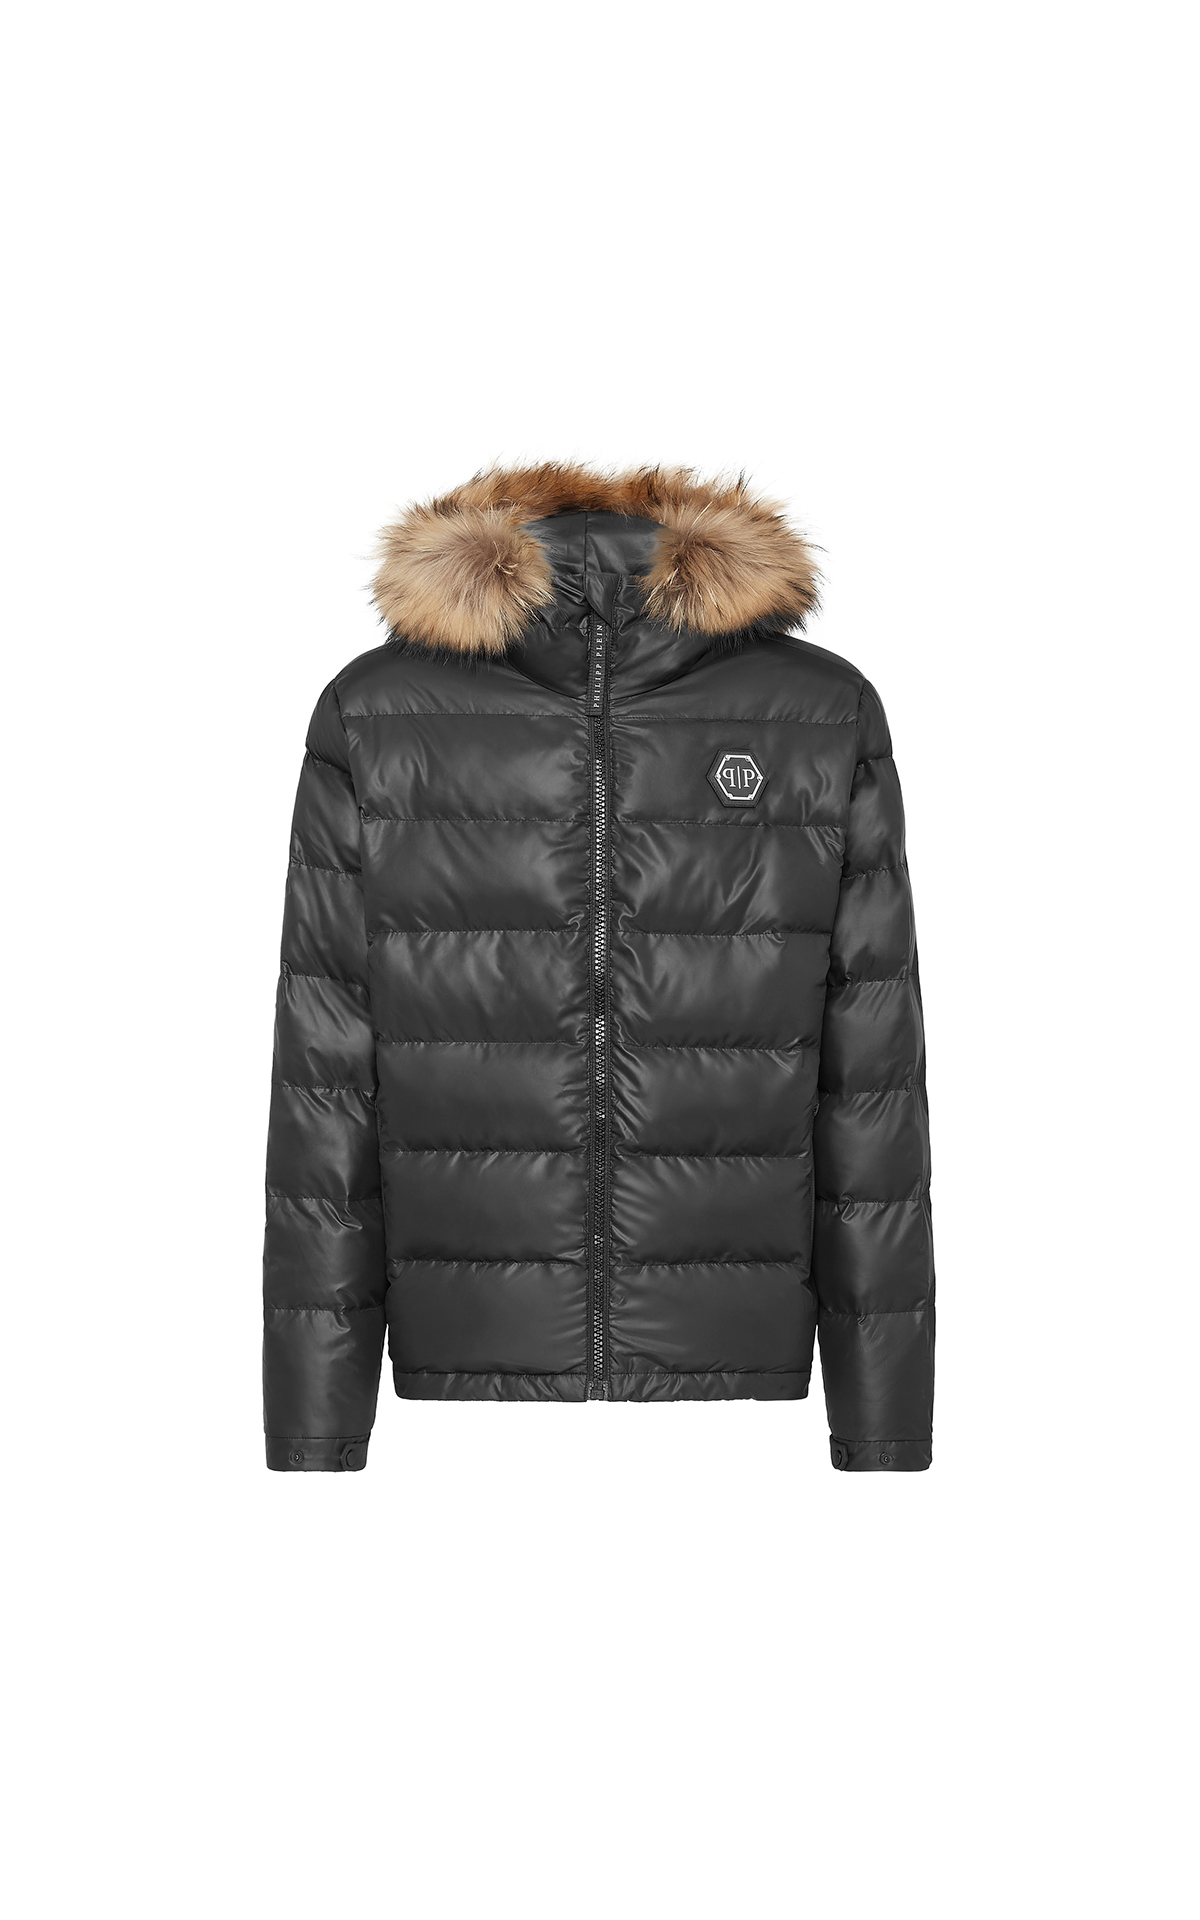 Philipp Plein black puffer jacket with fur hood La Vallée Village